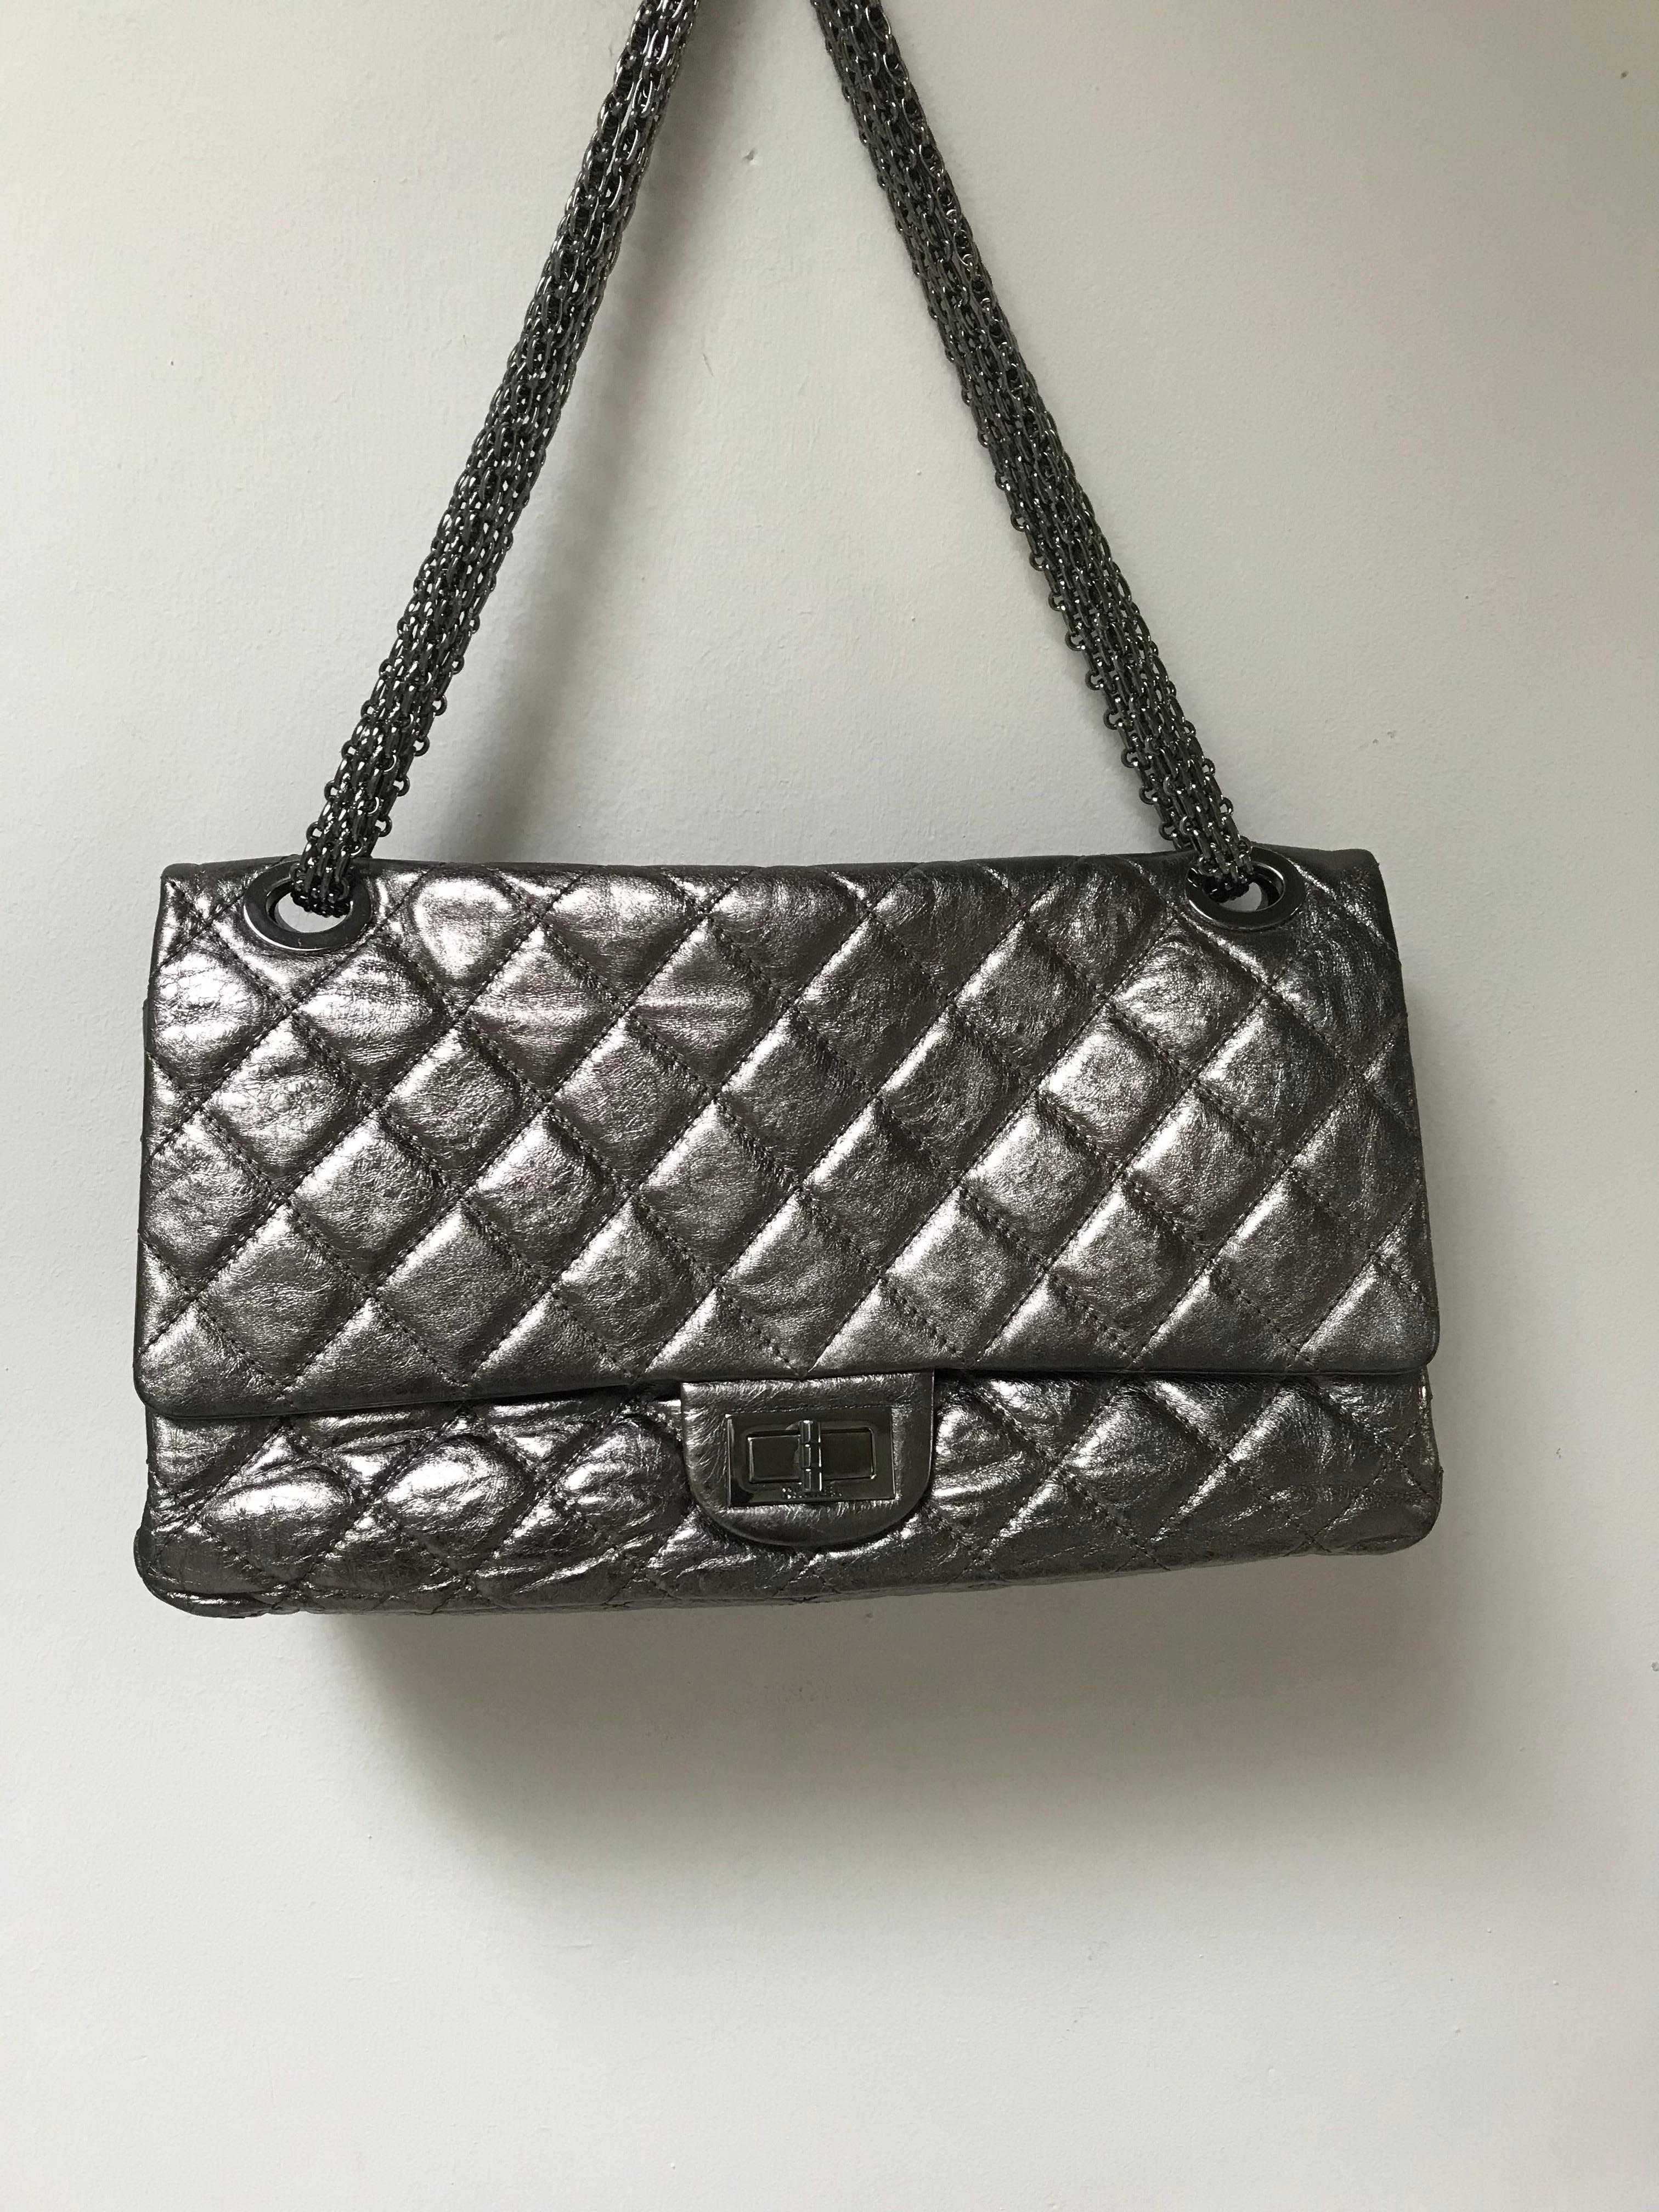 Über
Limitierte Auflage der Maxi Reissure Chanel Tasche mit doppeltem Überschlag  aus silbernem Metallic-Leder und mit dicken Silberketten. Doppelkette 62 cm, lang mit einer Kette 100 cm.  
Abmessungen:
Länge: 14 Zoll (35,5 cm)
Höhe:  8  Zoll ( 20